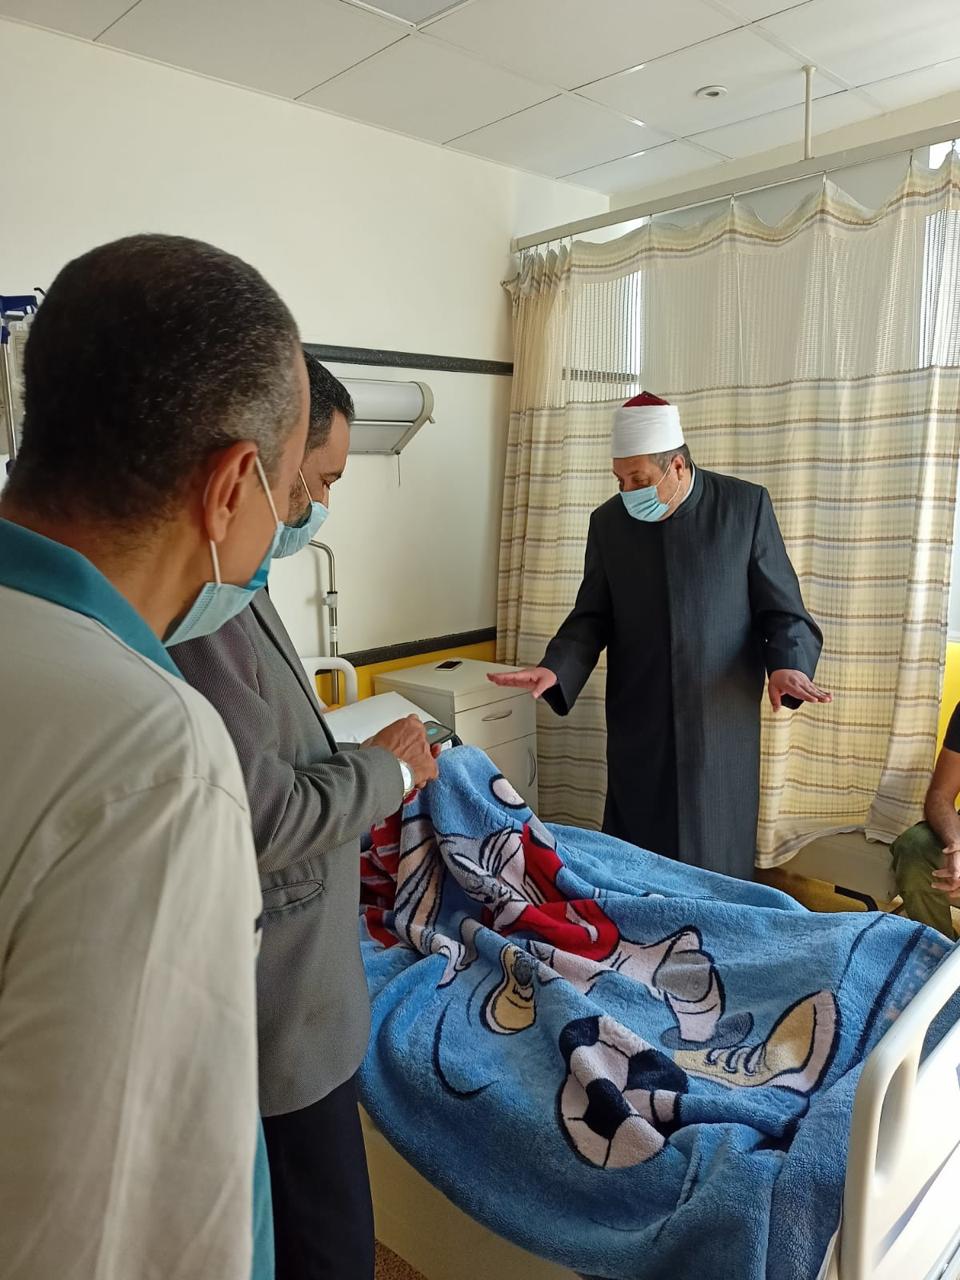 الإمام الأكبر يهدى الطلاب الممتحنين بالشهادة الثانوية الأزهرية بمستشفى 57357 تابلت لكل طالب منهم